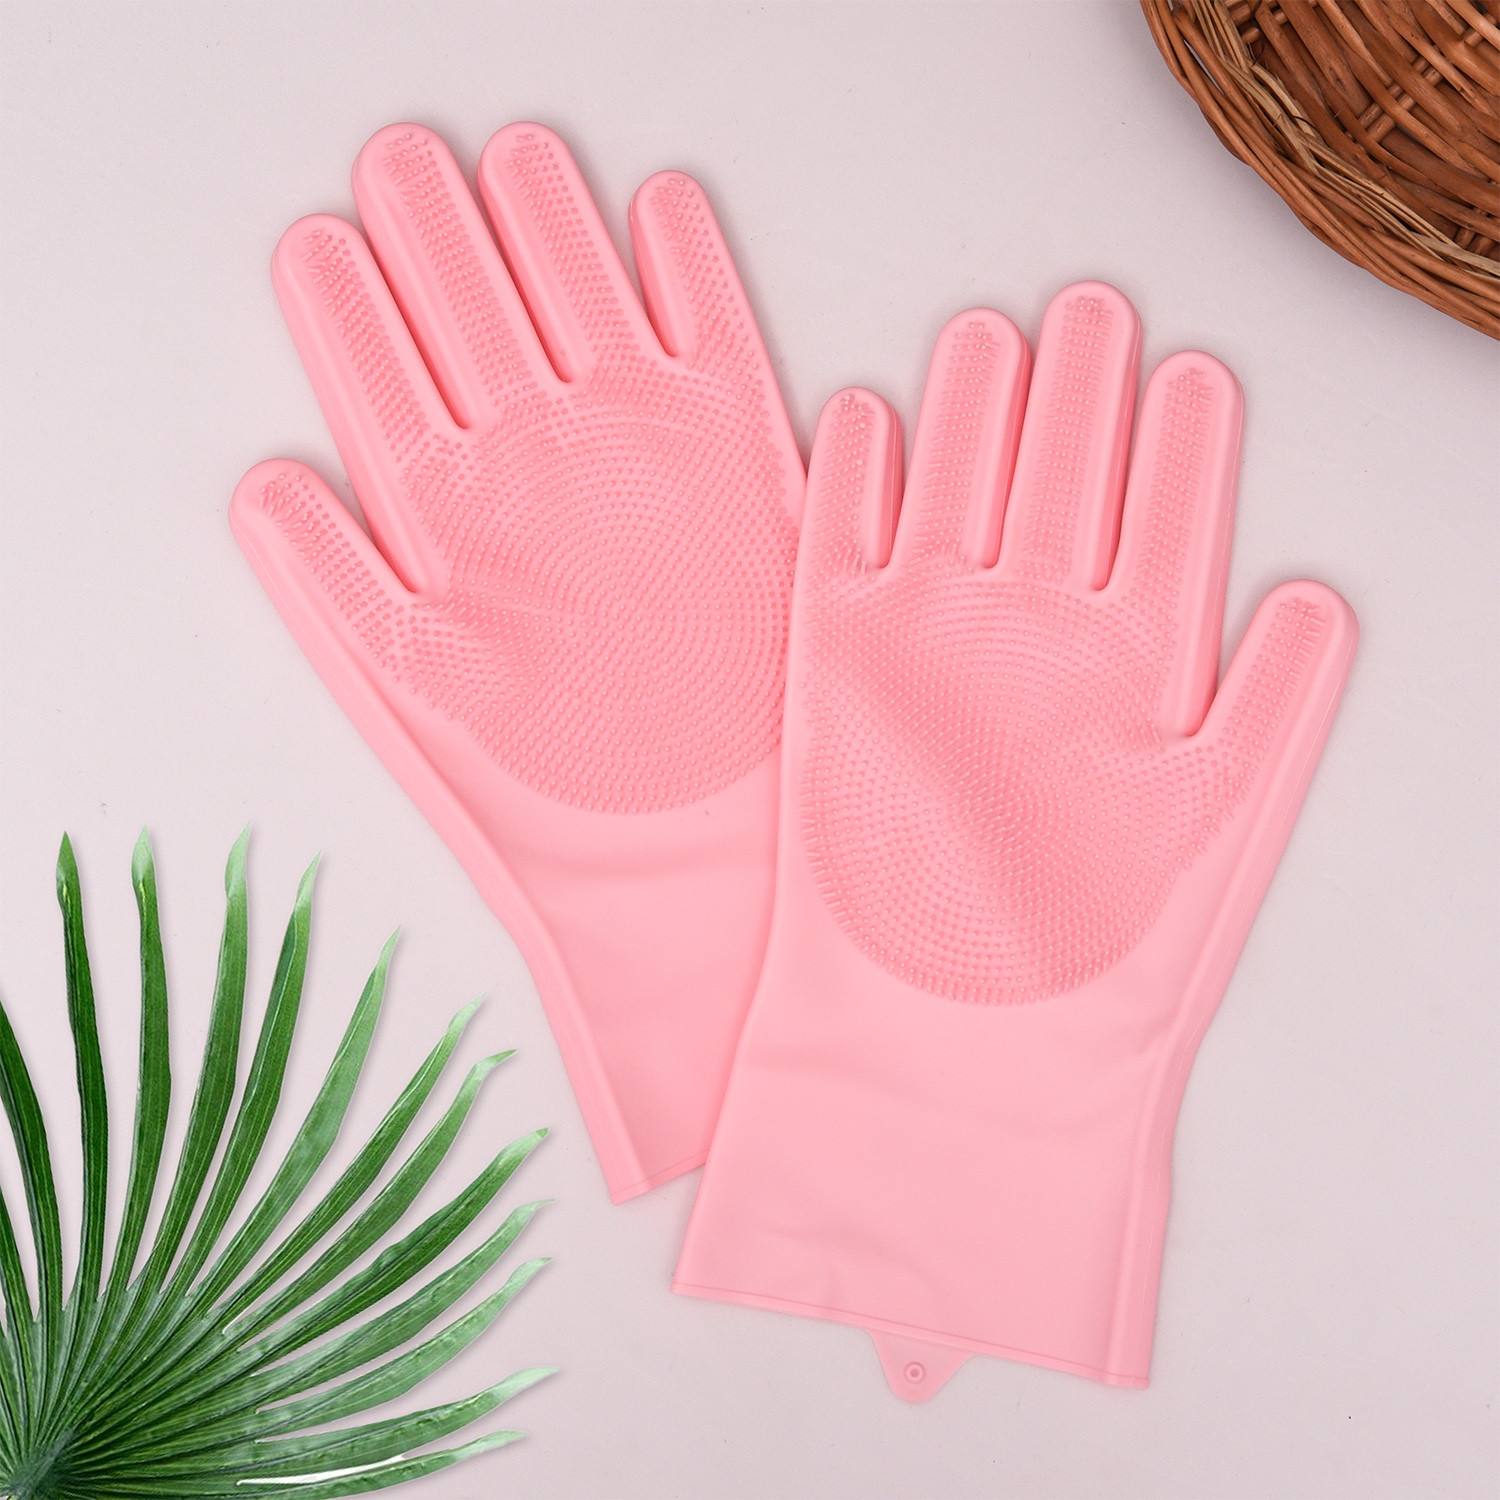 Kuber Industries Kitchen Gloves|Silicone Kitchen Dish Washing Gloves|Scrubbing Gloves For Kitchen|Car Cleaning Gloves|Bathroom Cleaning Gloves|1 Pair (Pink)